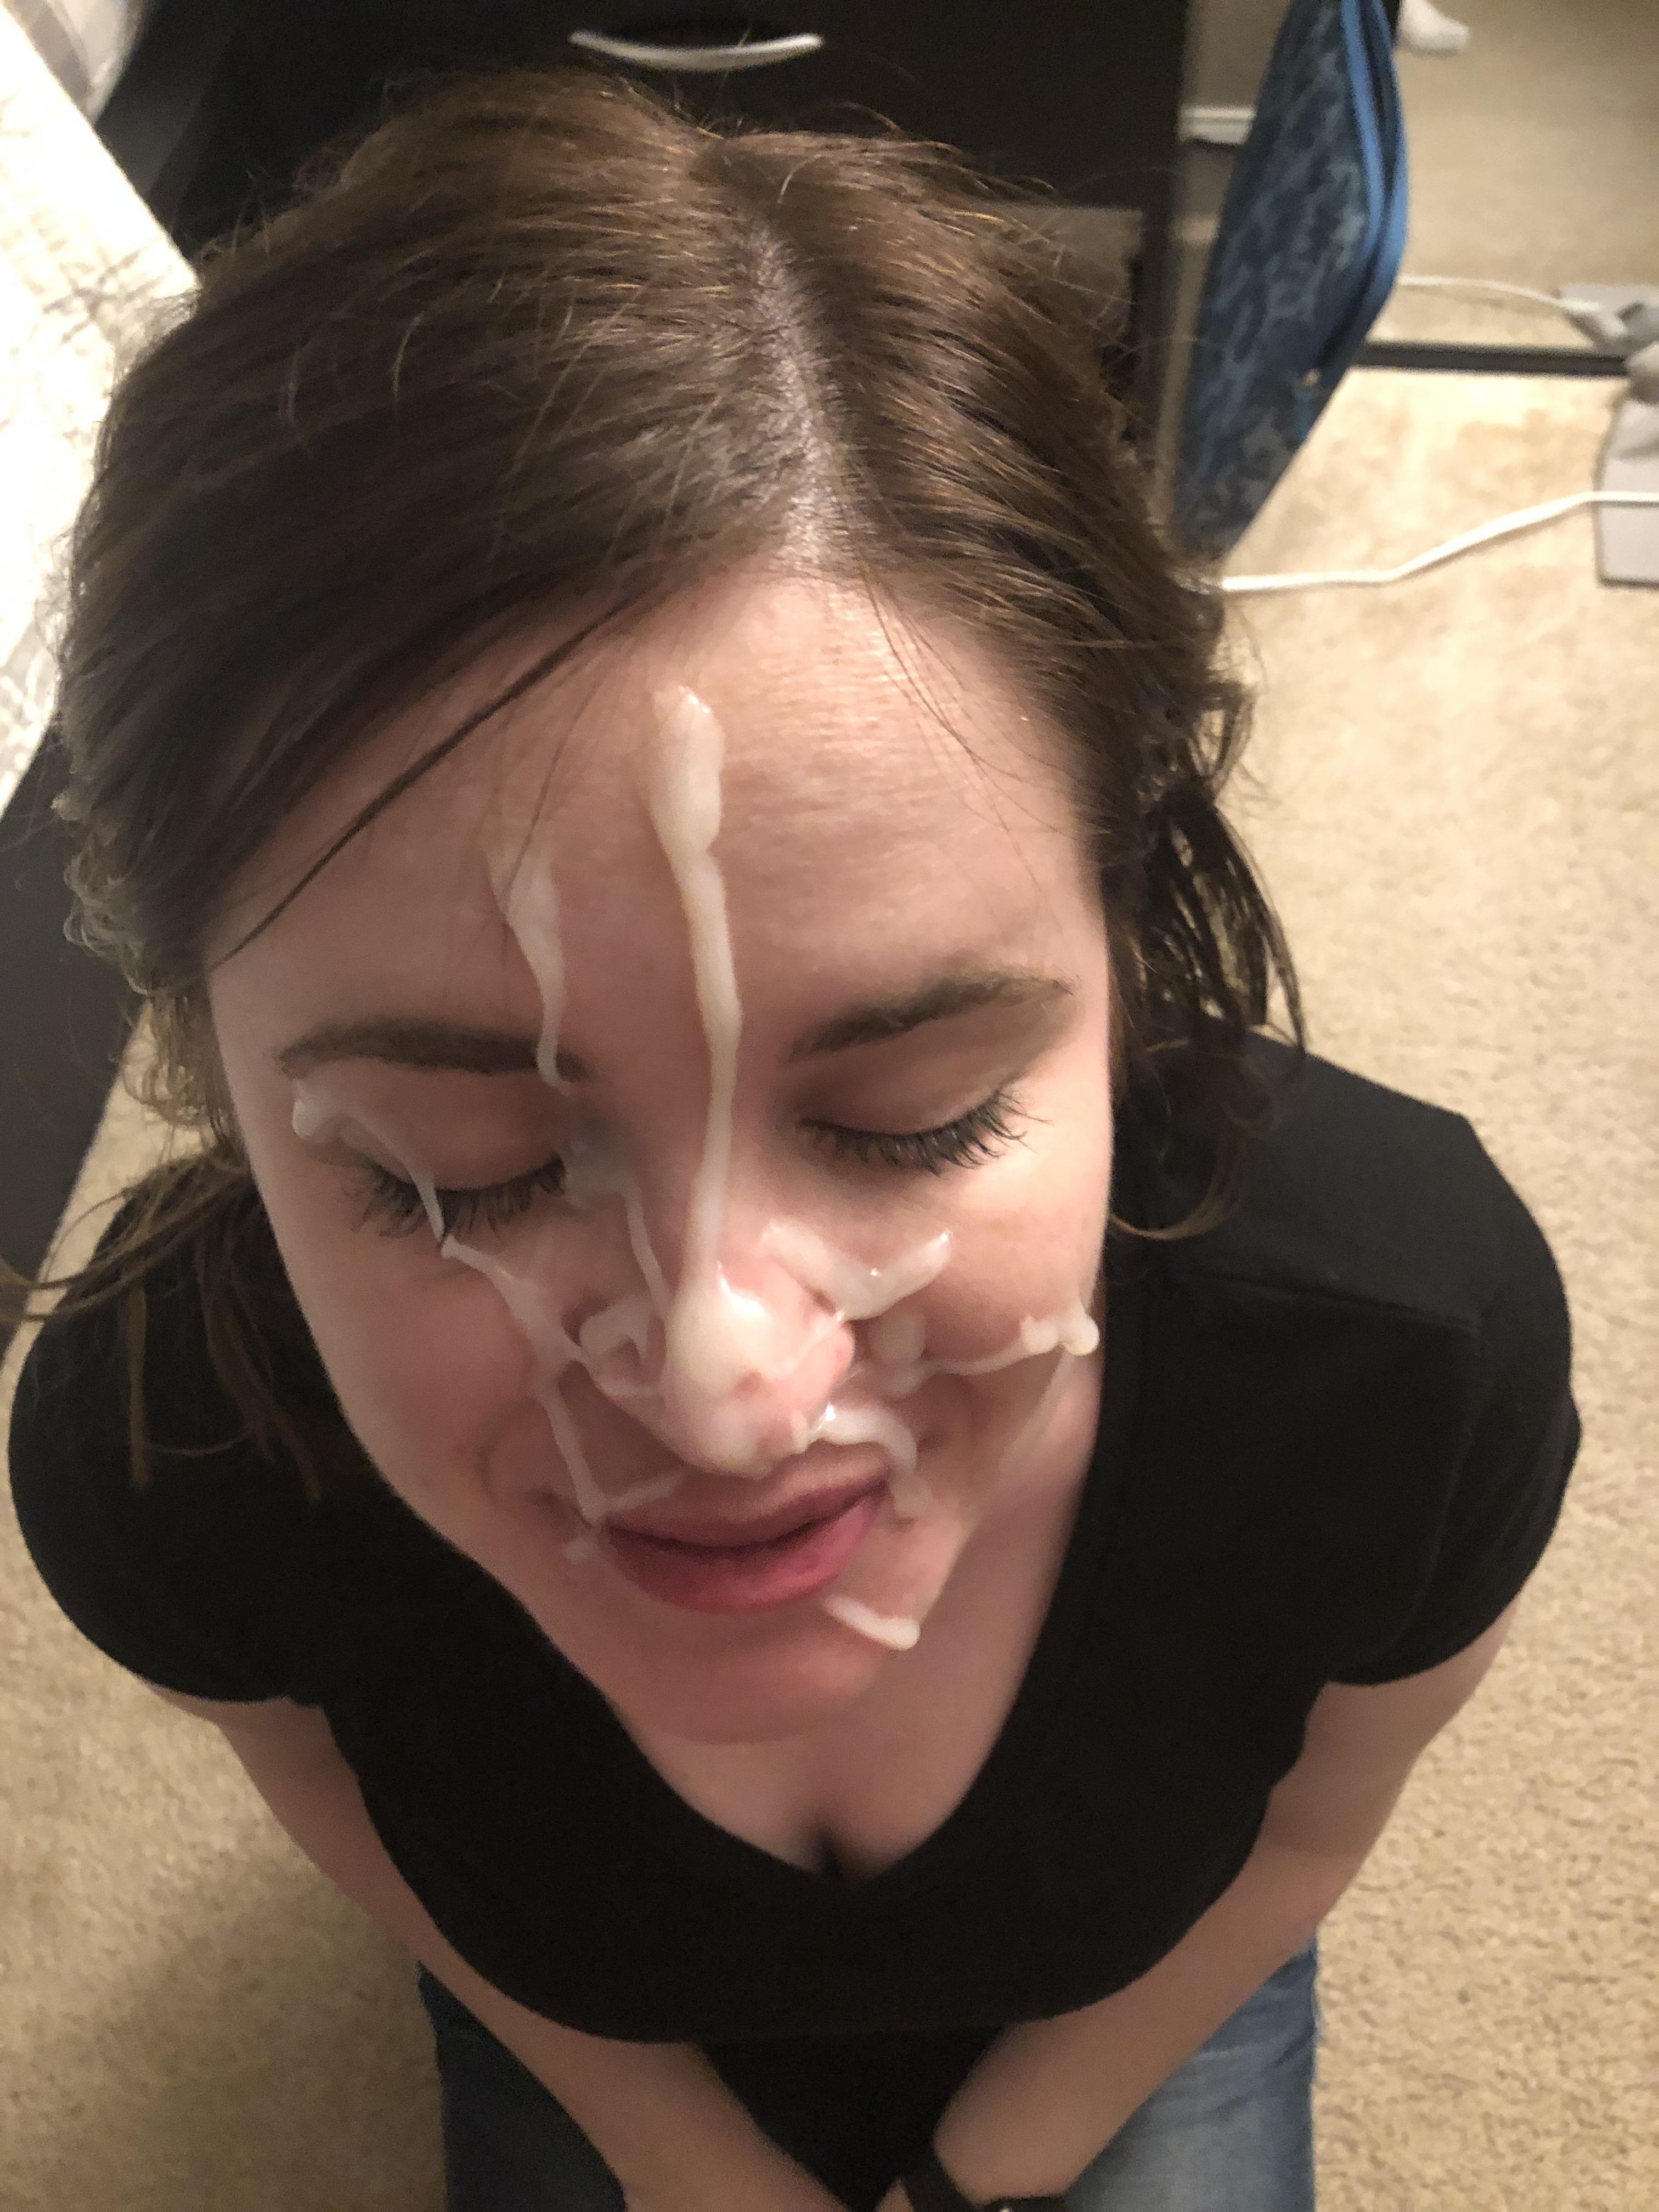 Wife gets big facial